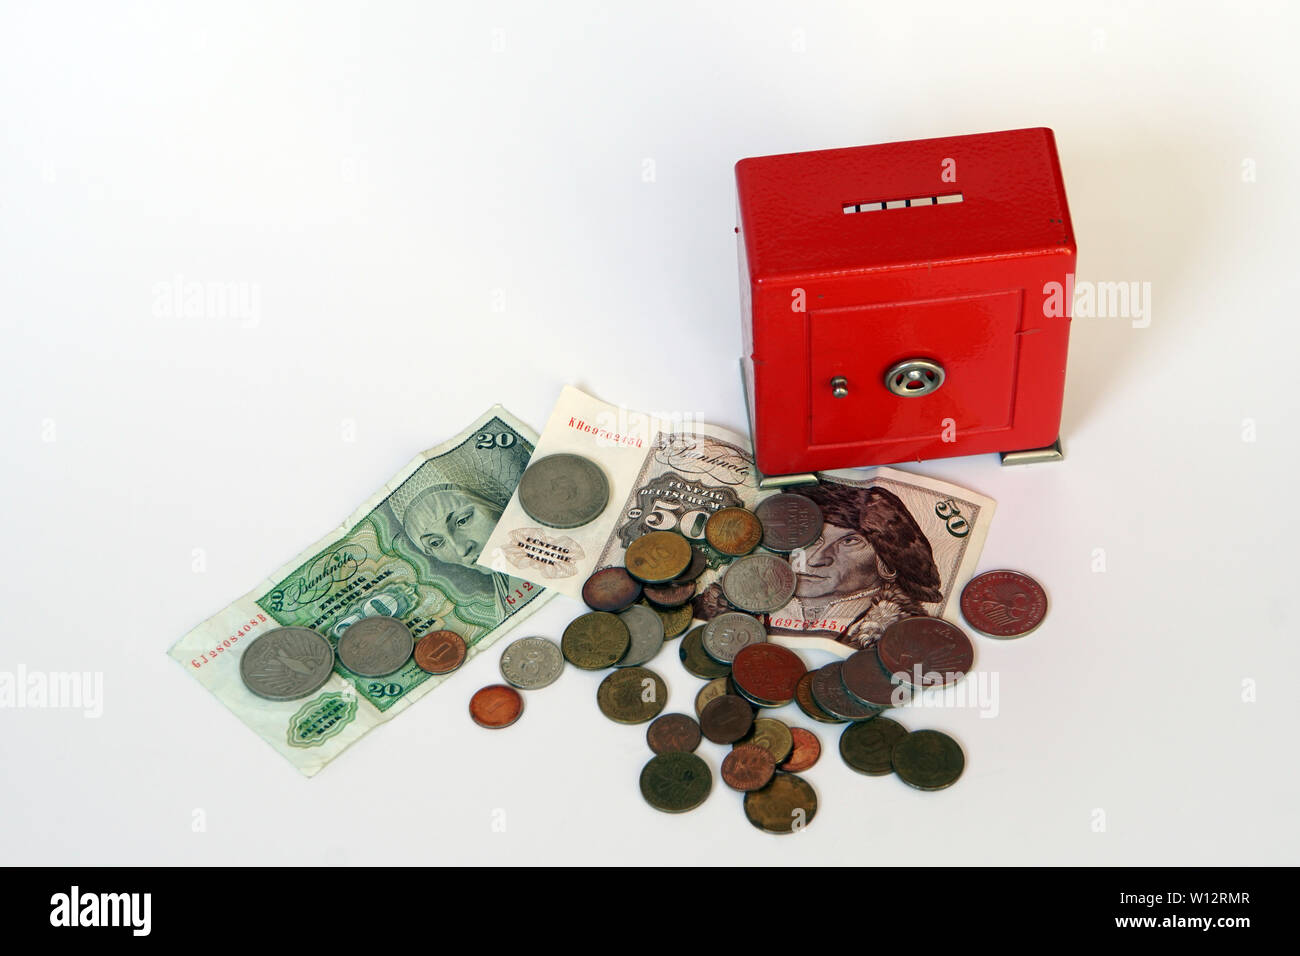 Symbolfoto roter Tresor als Spardose mit DM-Banknoten und Münzen Stock  Photo - Alamy